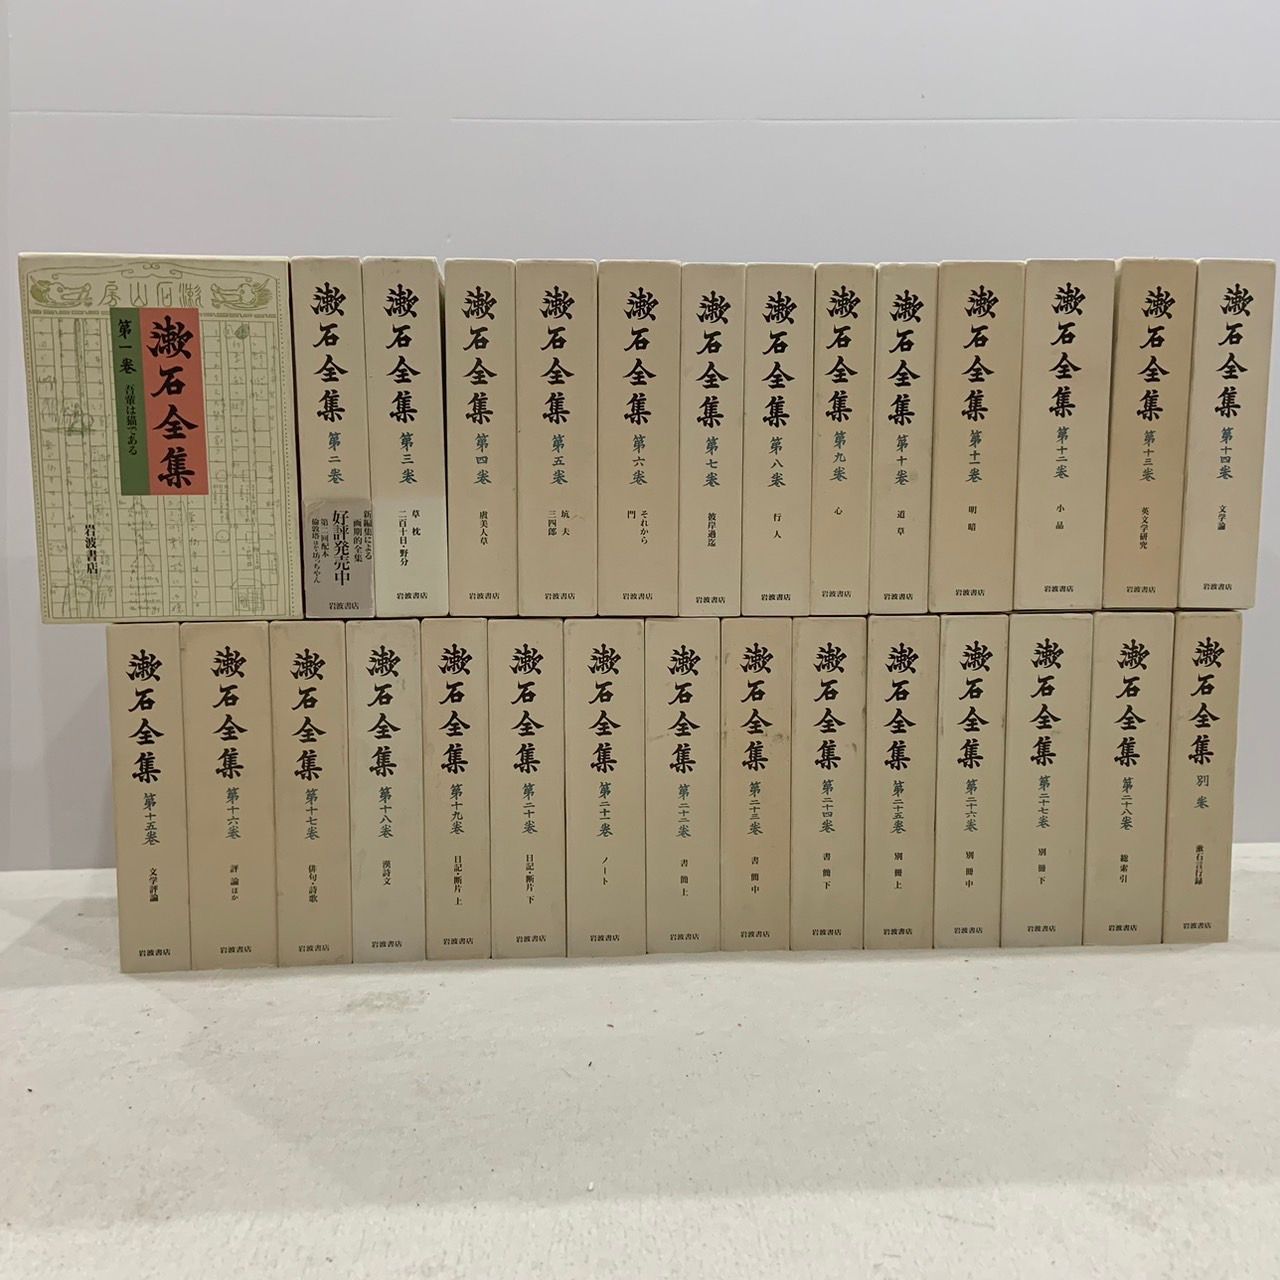 岩波版 漱石全集 全28巻 別巻1 - 文学/小説